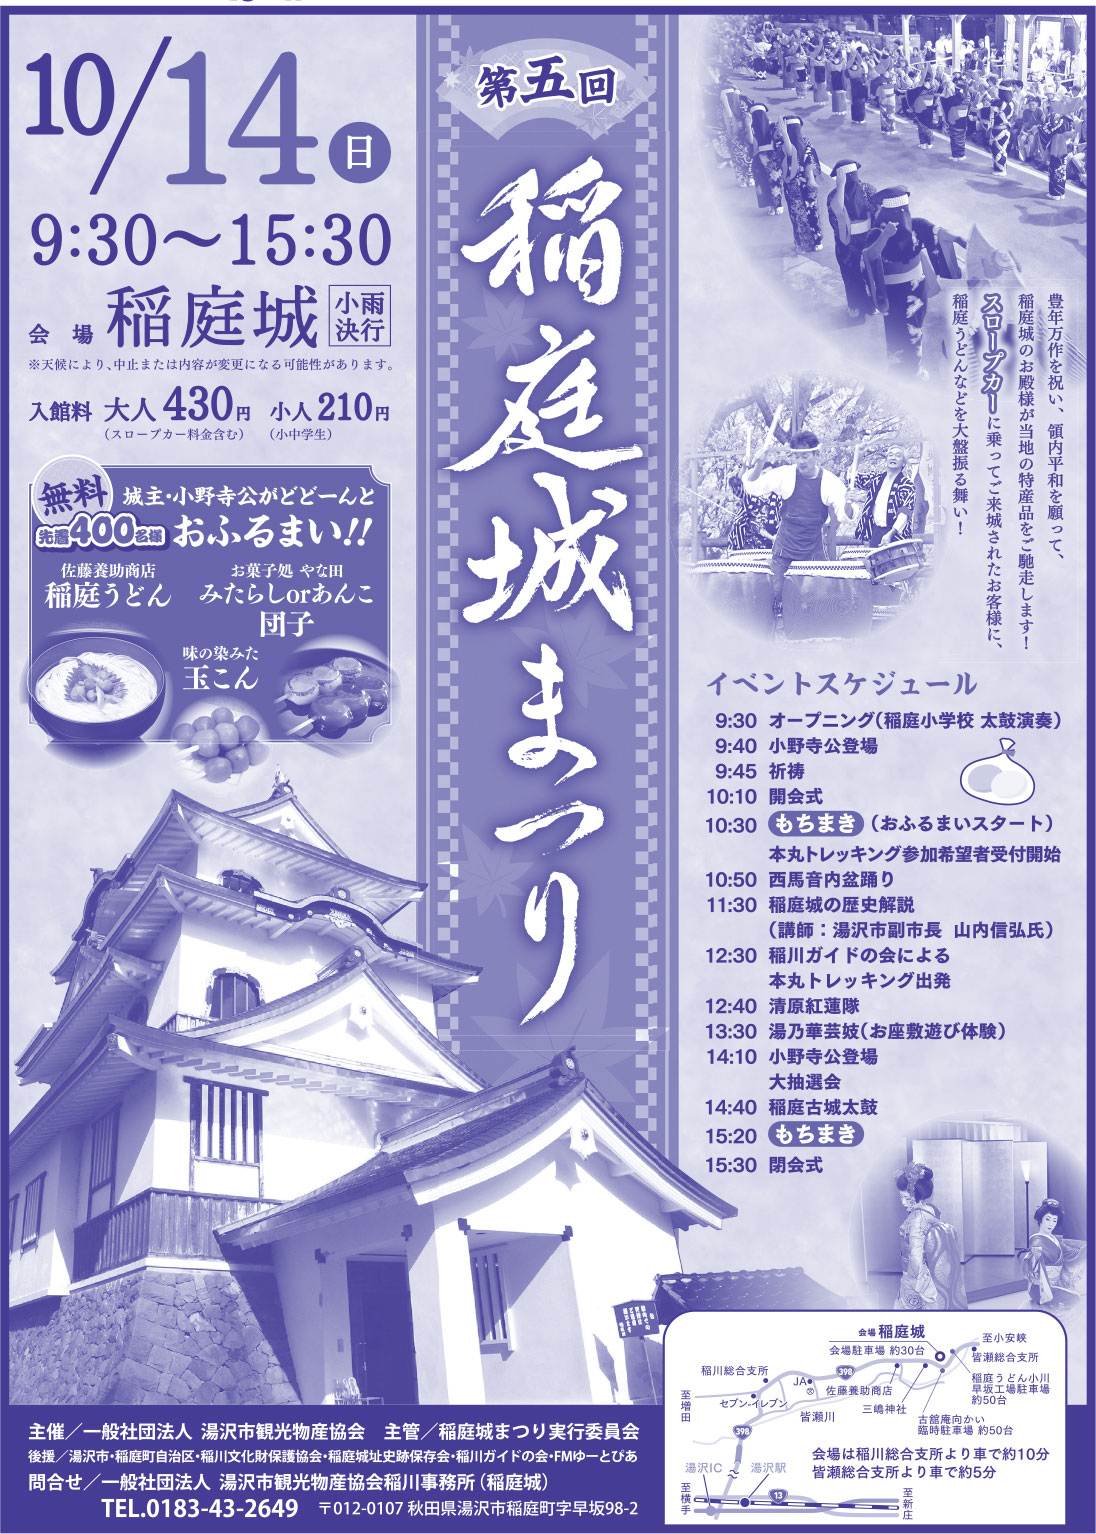 湯沢市観光物産協会様の2018.10.12号-2広告